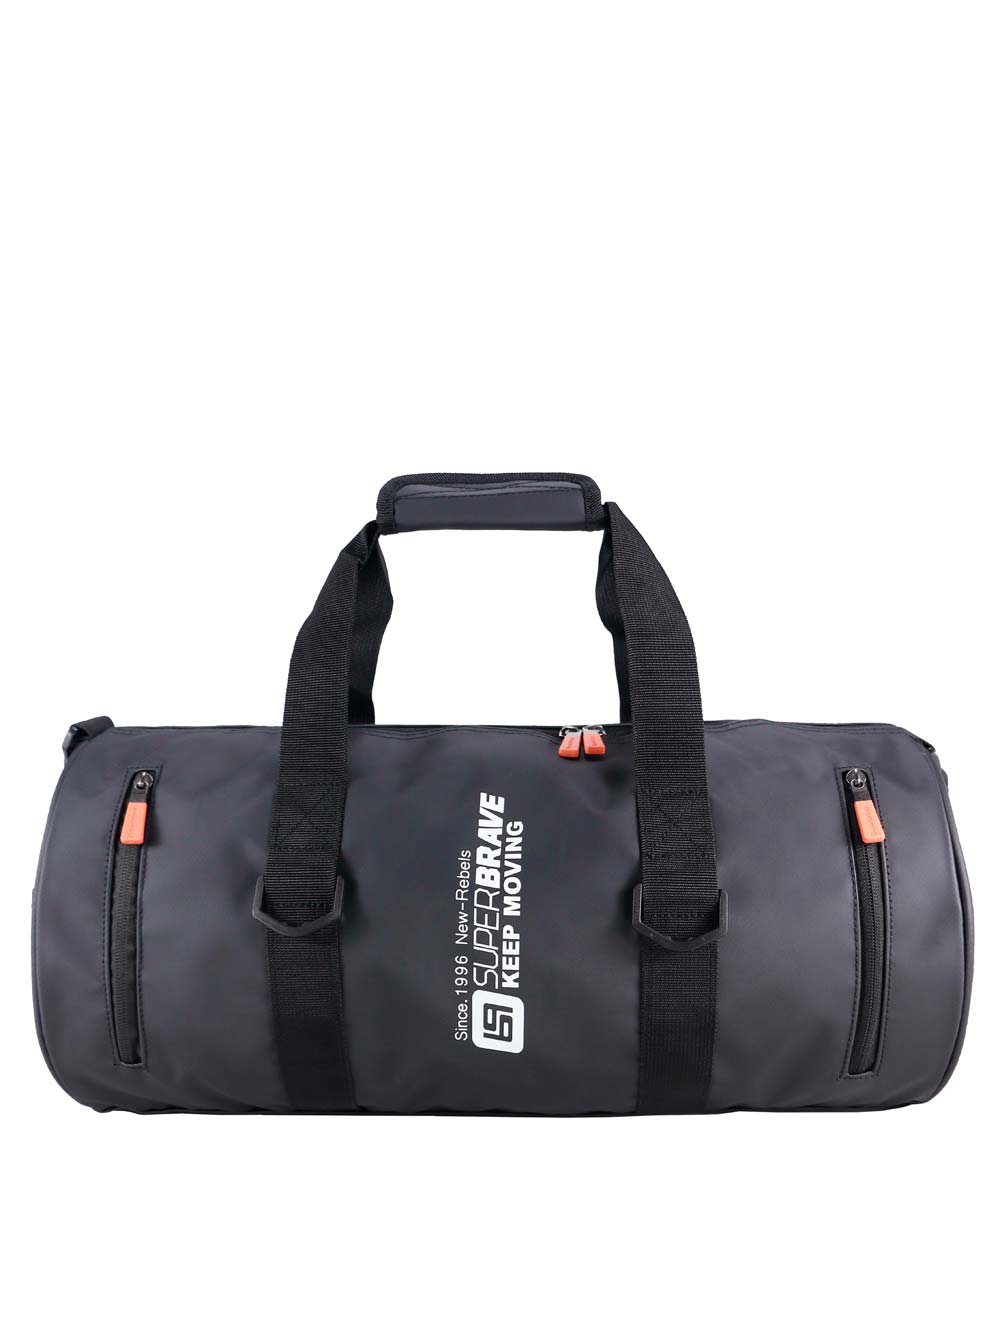 Дорожная сумка унисекс SuperBrave 70019rv polyester черная, 48х22х22 см